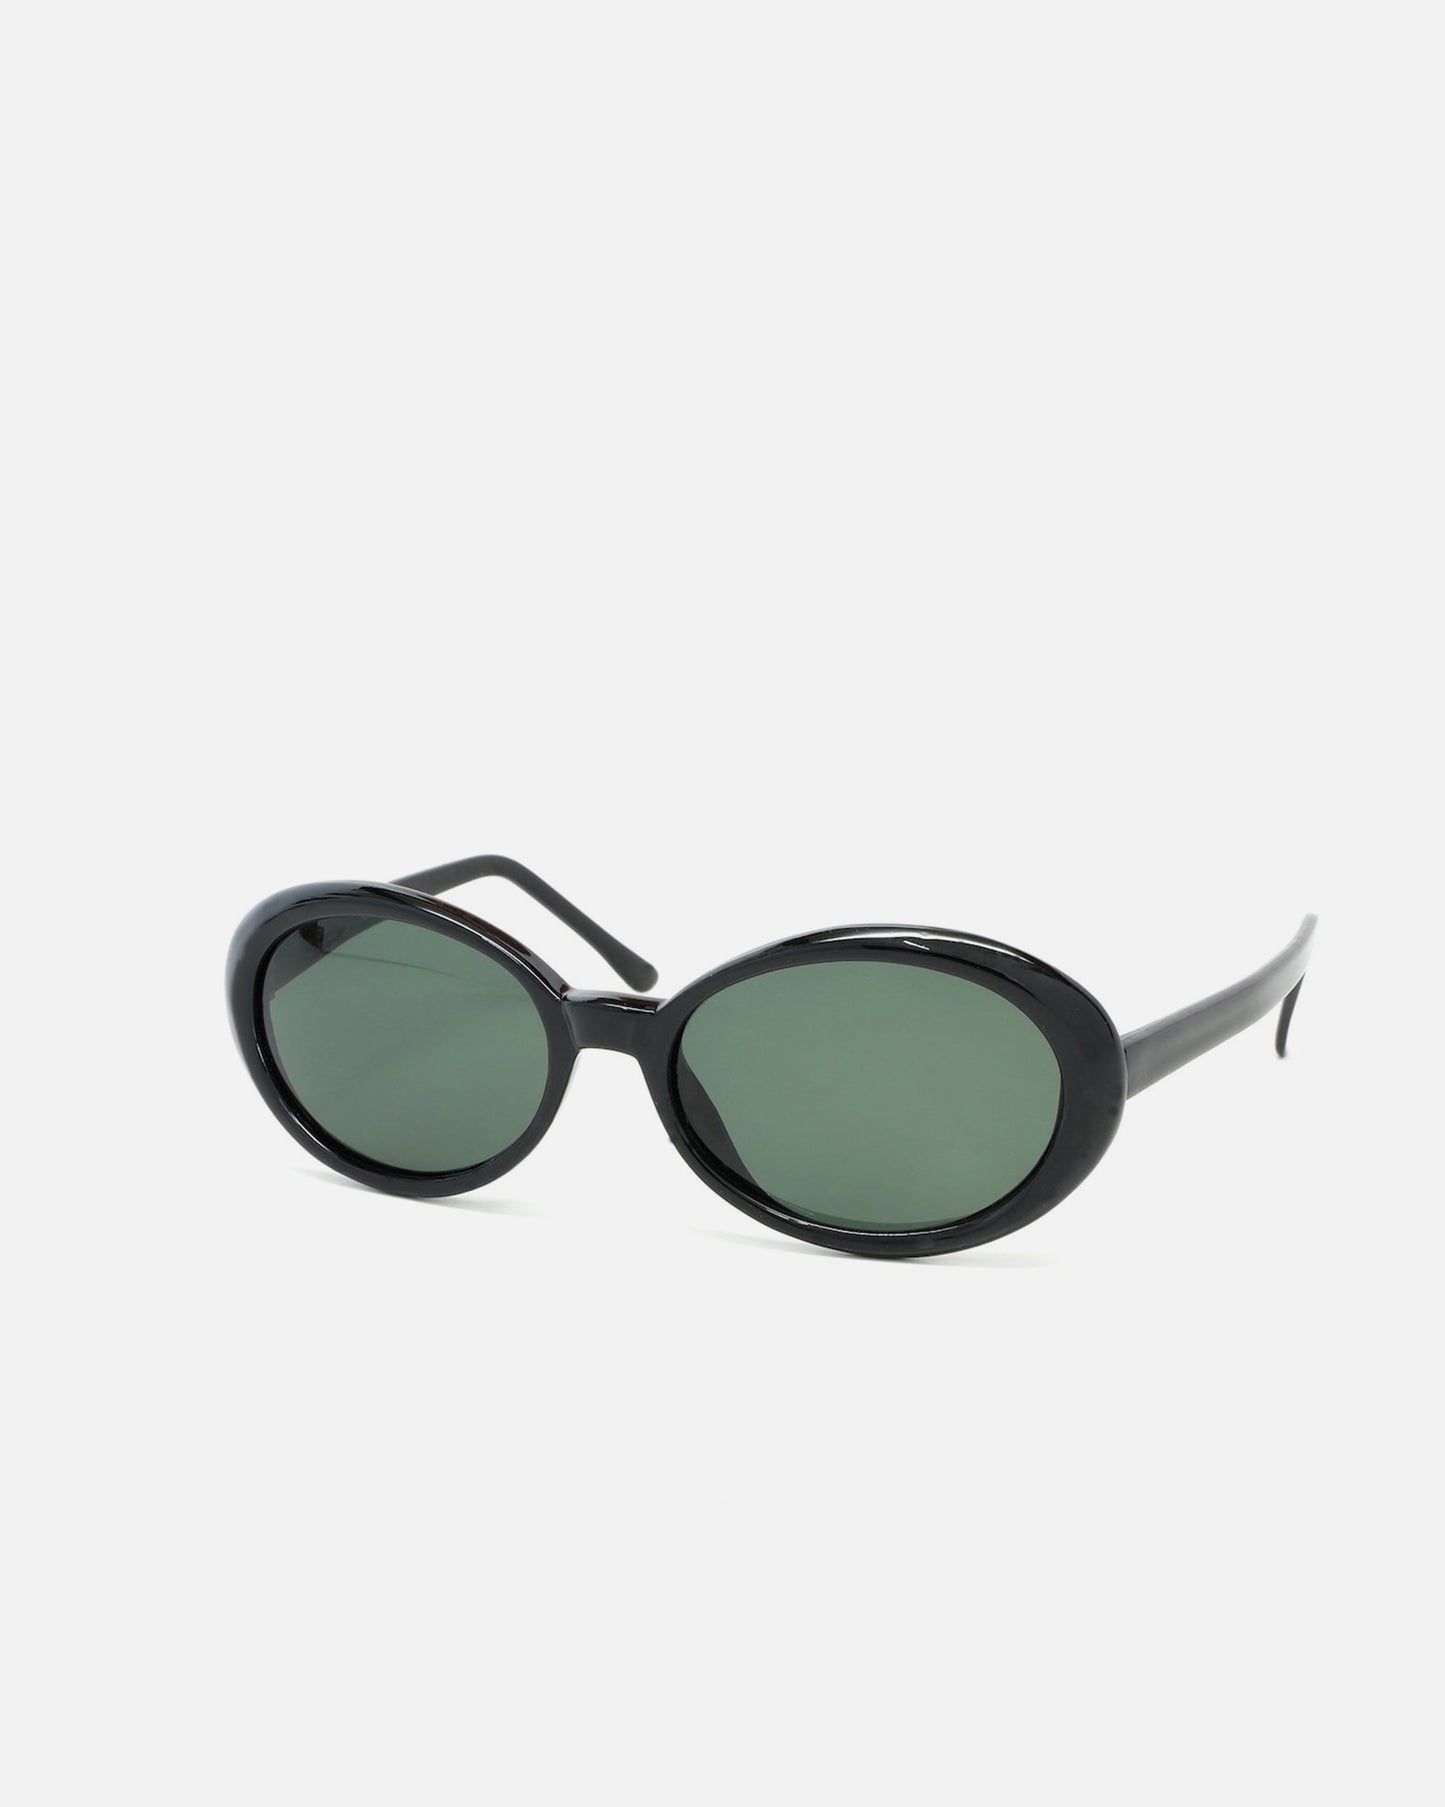 NOS  Mod Oval Black Frame Sunglasses